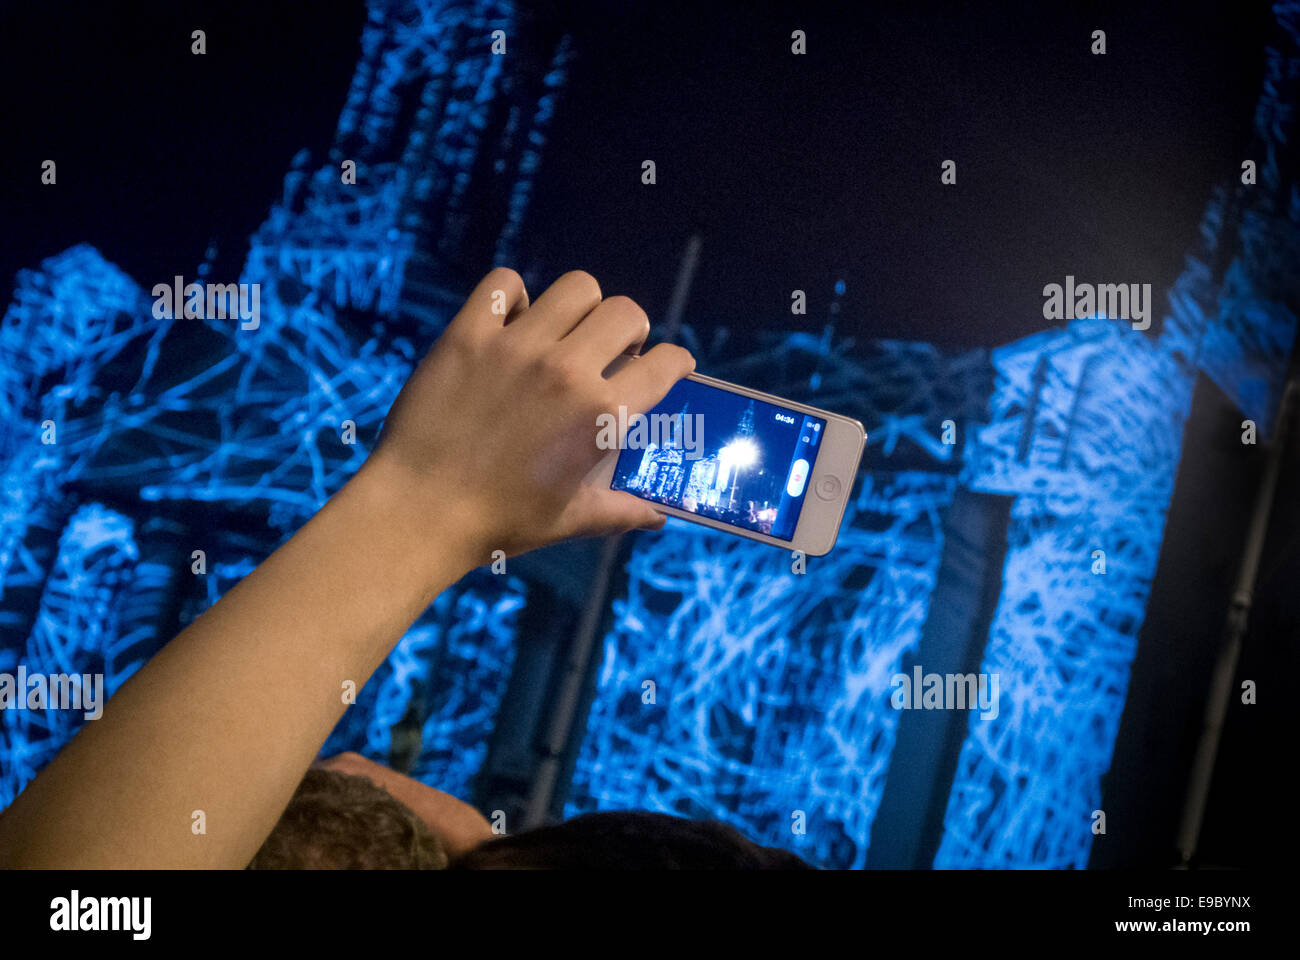 Beleuchtete Leeds Civic Hall wird auf einem iPhone gefilmt. Helle Nacht Leeds. Stockfoto